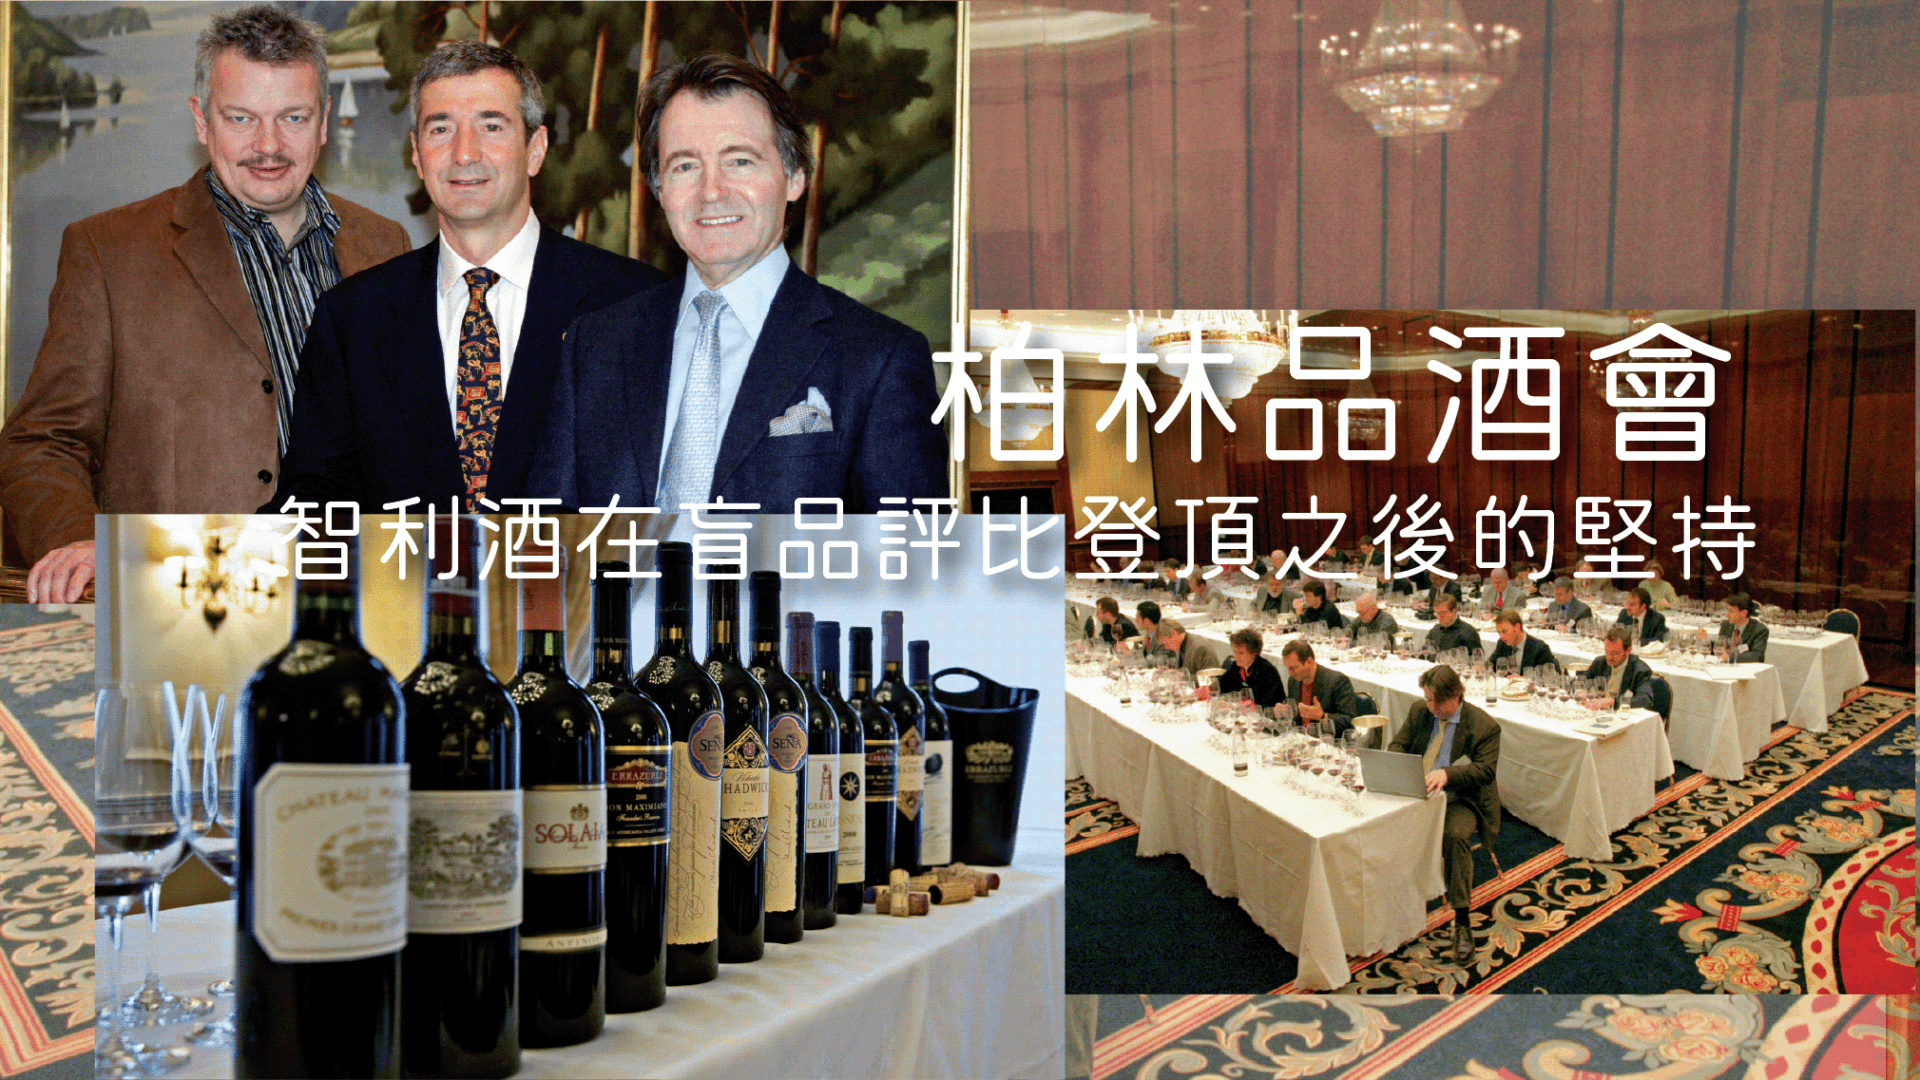 柏林品酒會: 智利酒在盲品評比登頂之後的堅持 - WineNow HK 專欄文章